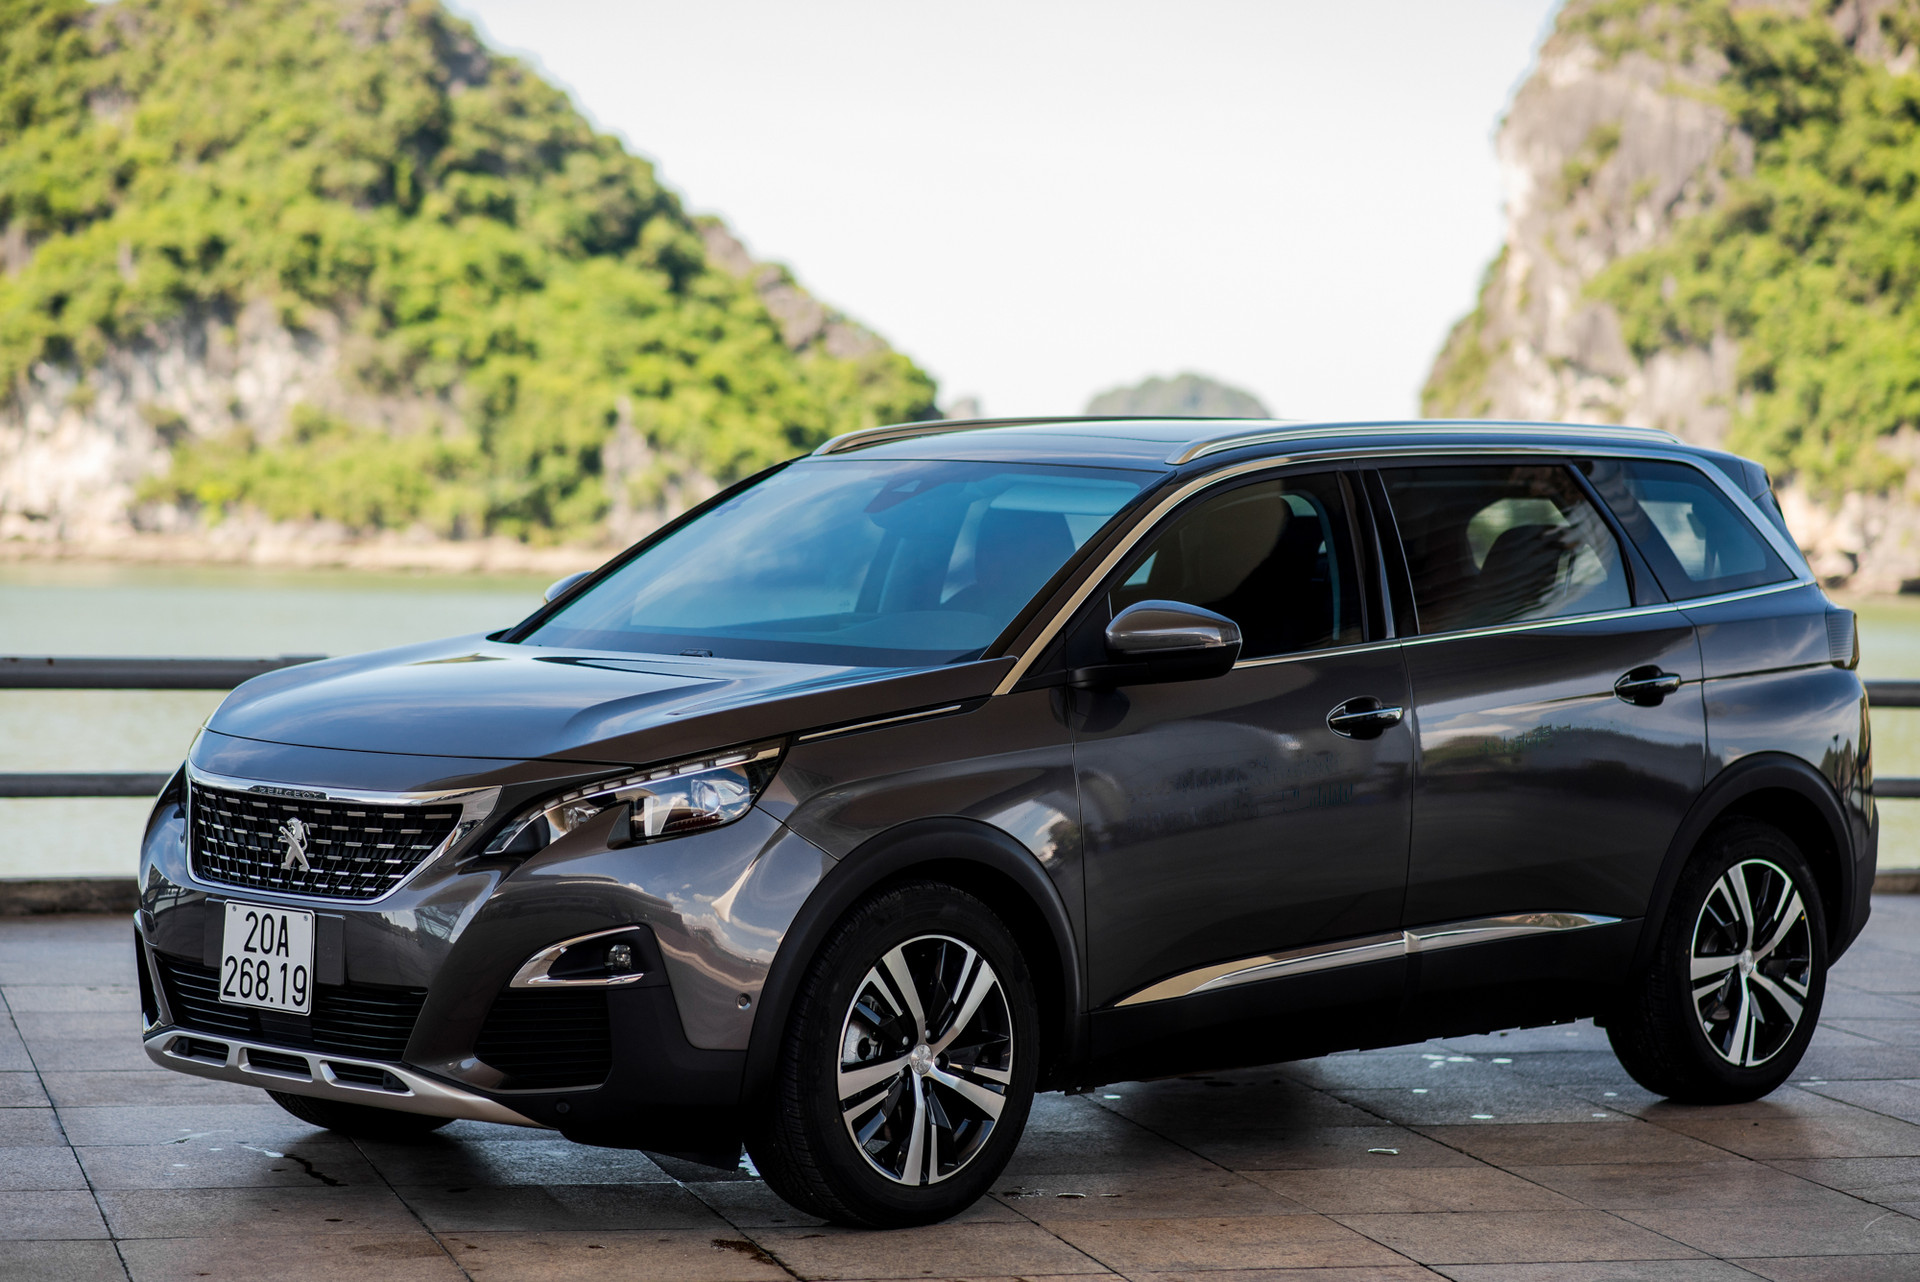 Peugeot ưu đãi giá lên đến 50 triệu và nhiều quyền lợi hấp dẫn khác